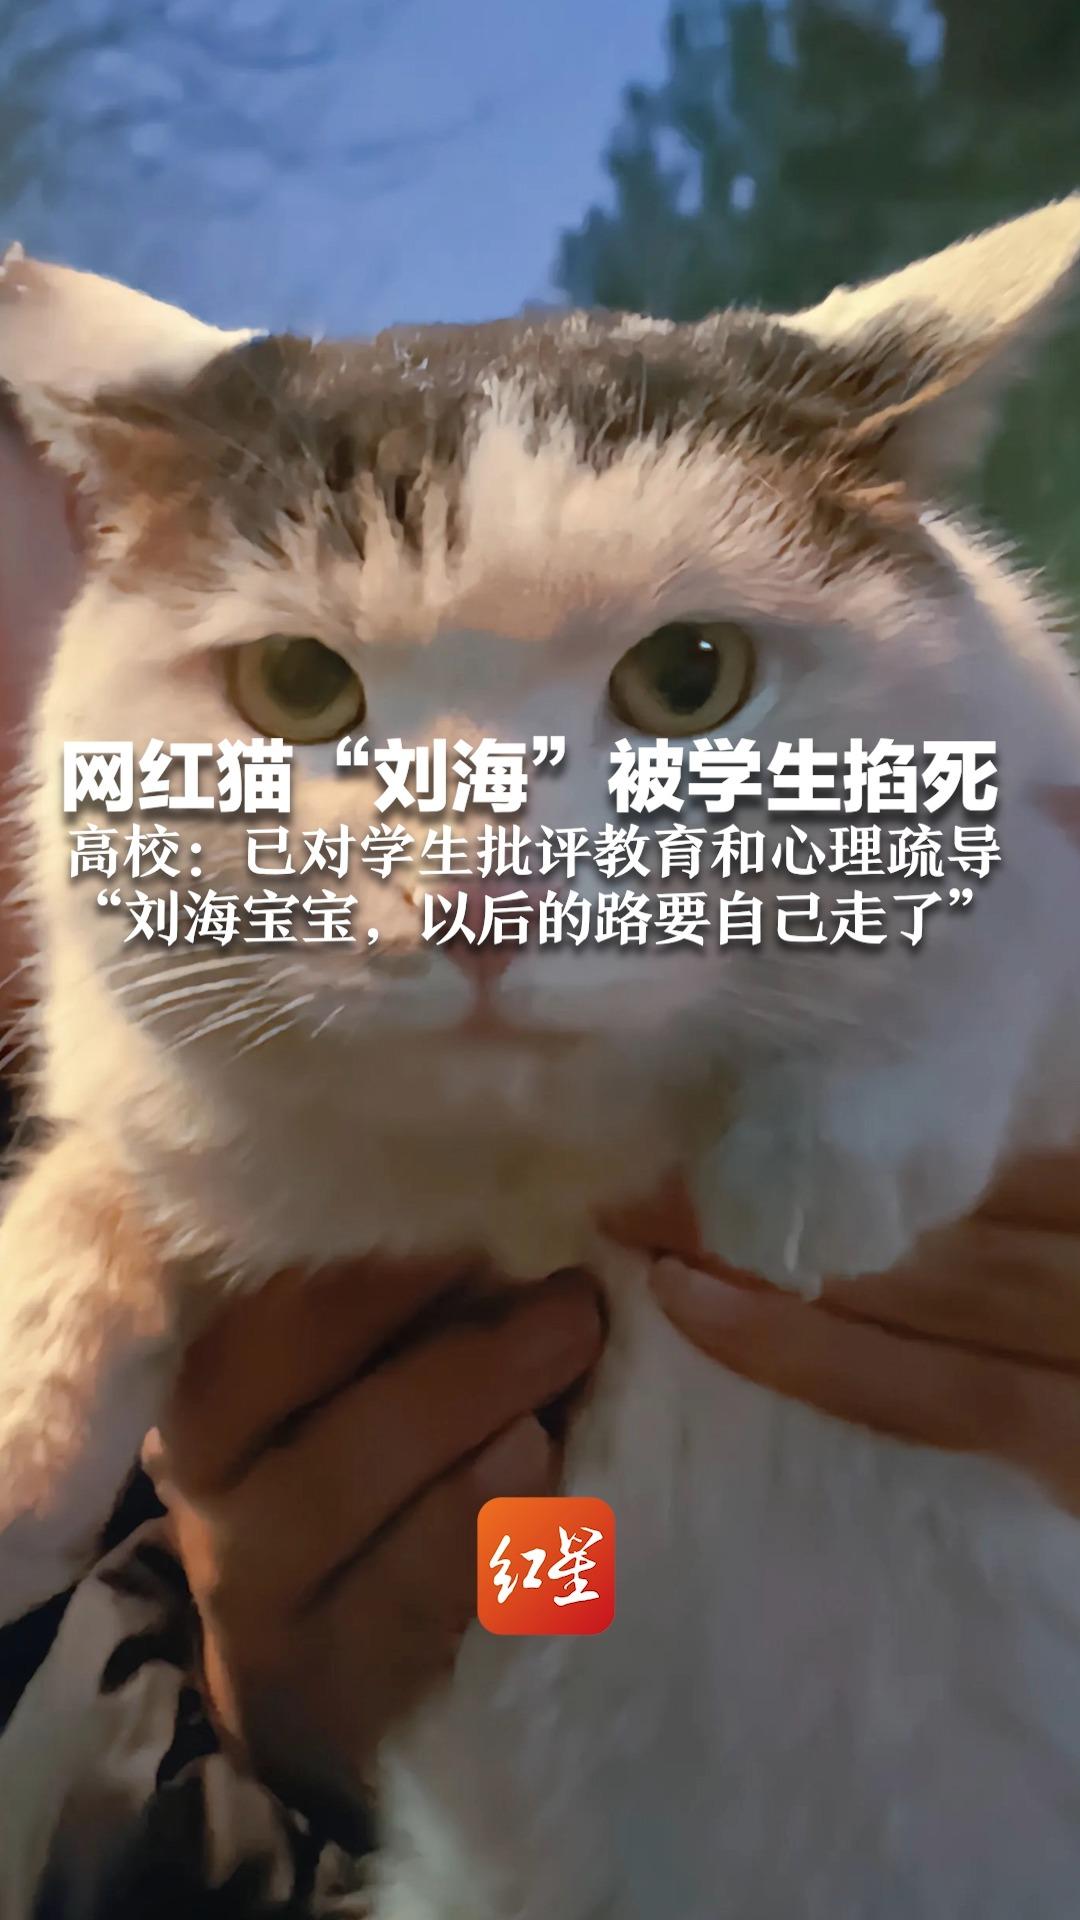 网红猫刘海被学生掐死 高校:已对学生批评教育 心理疏导 刘海宝宝